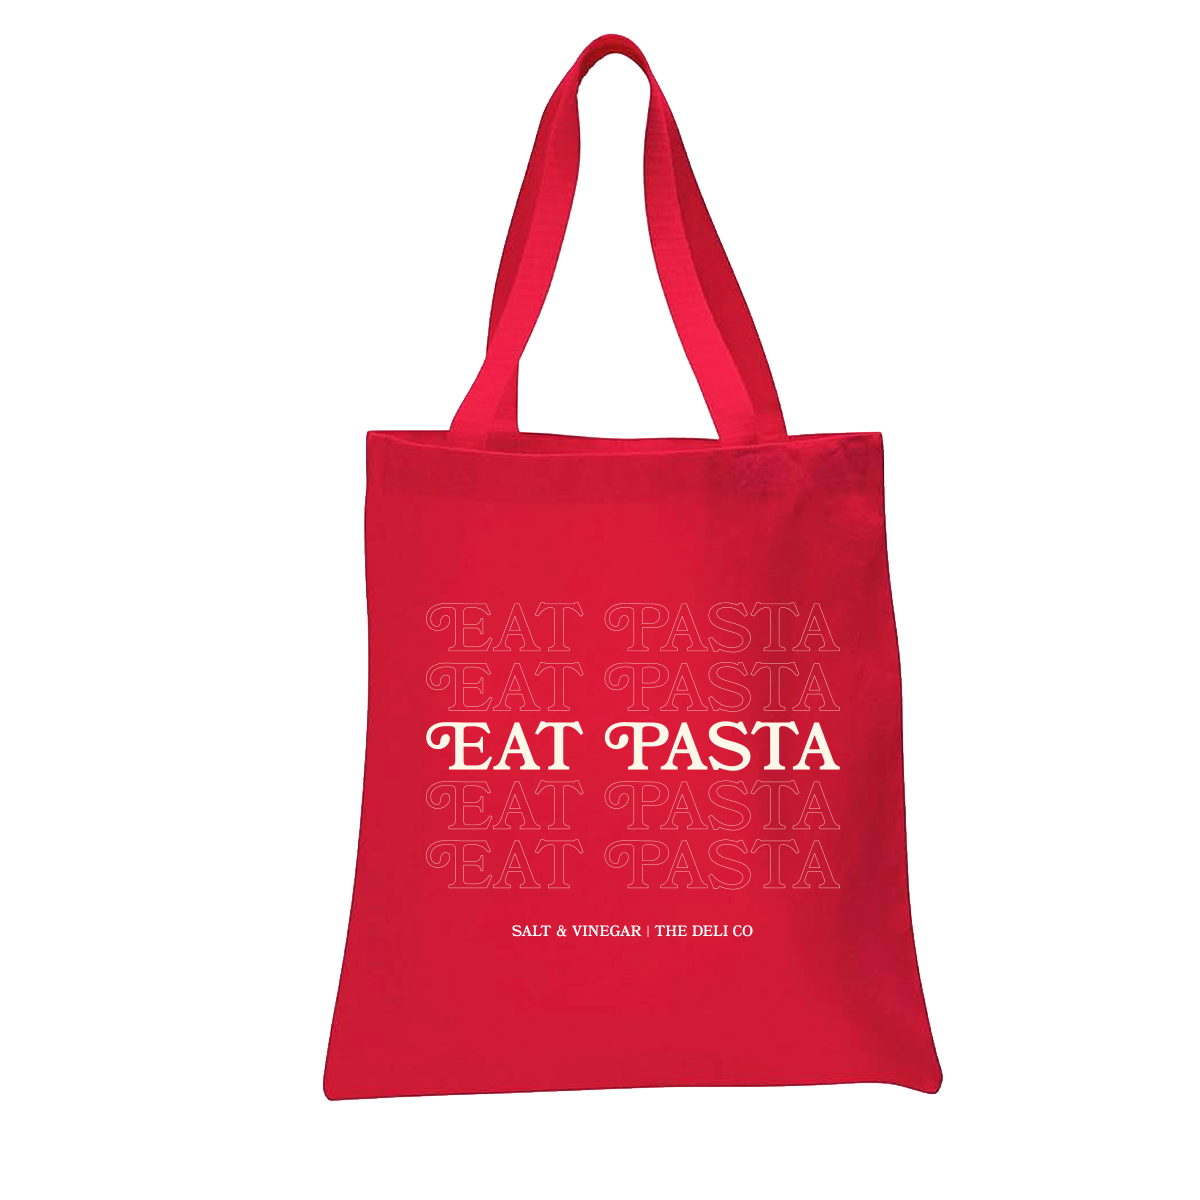 Eat pasta tote bag